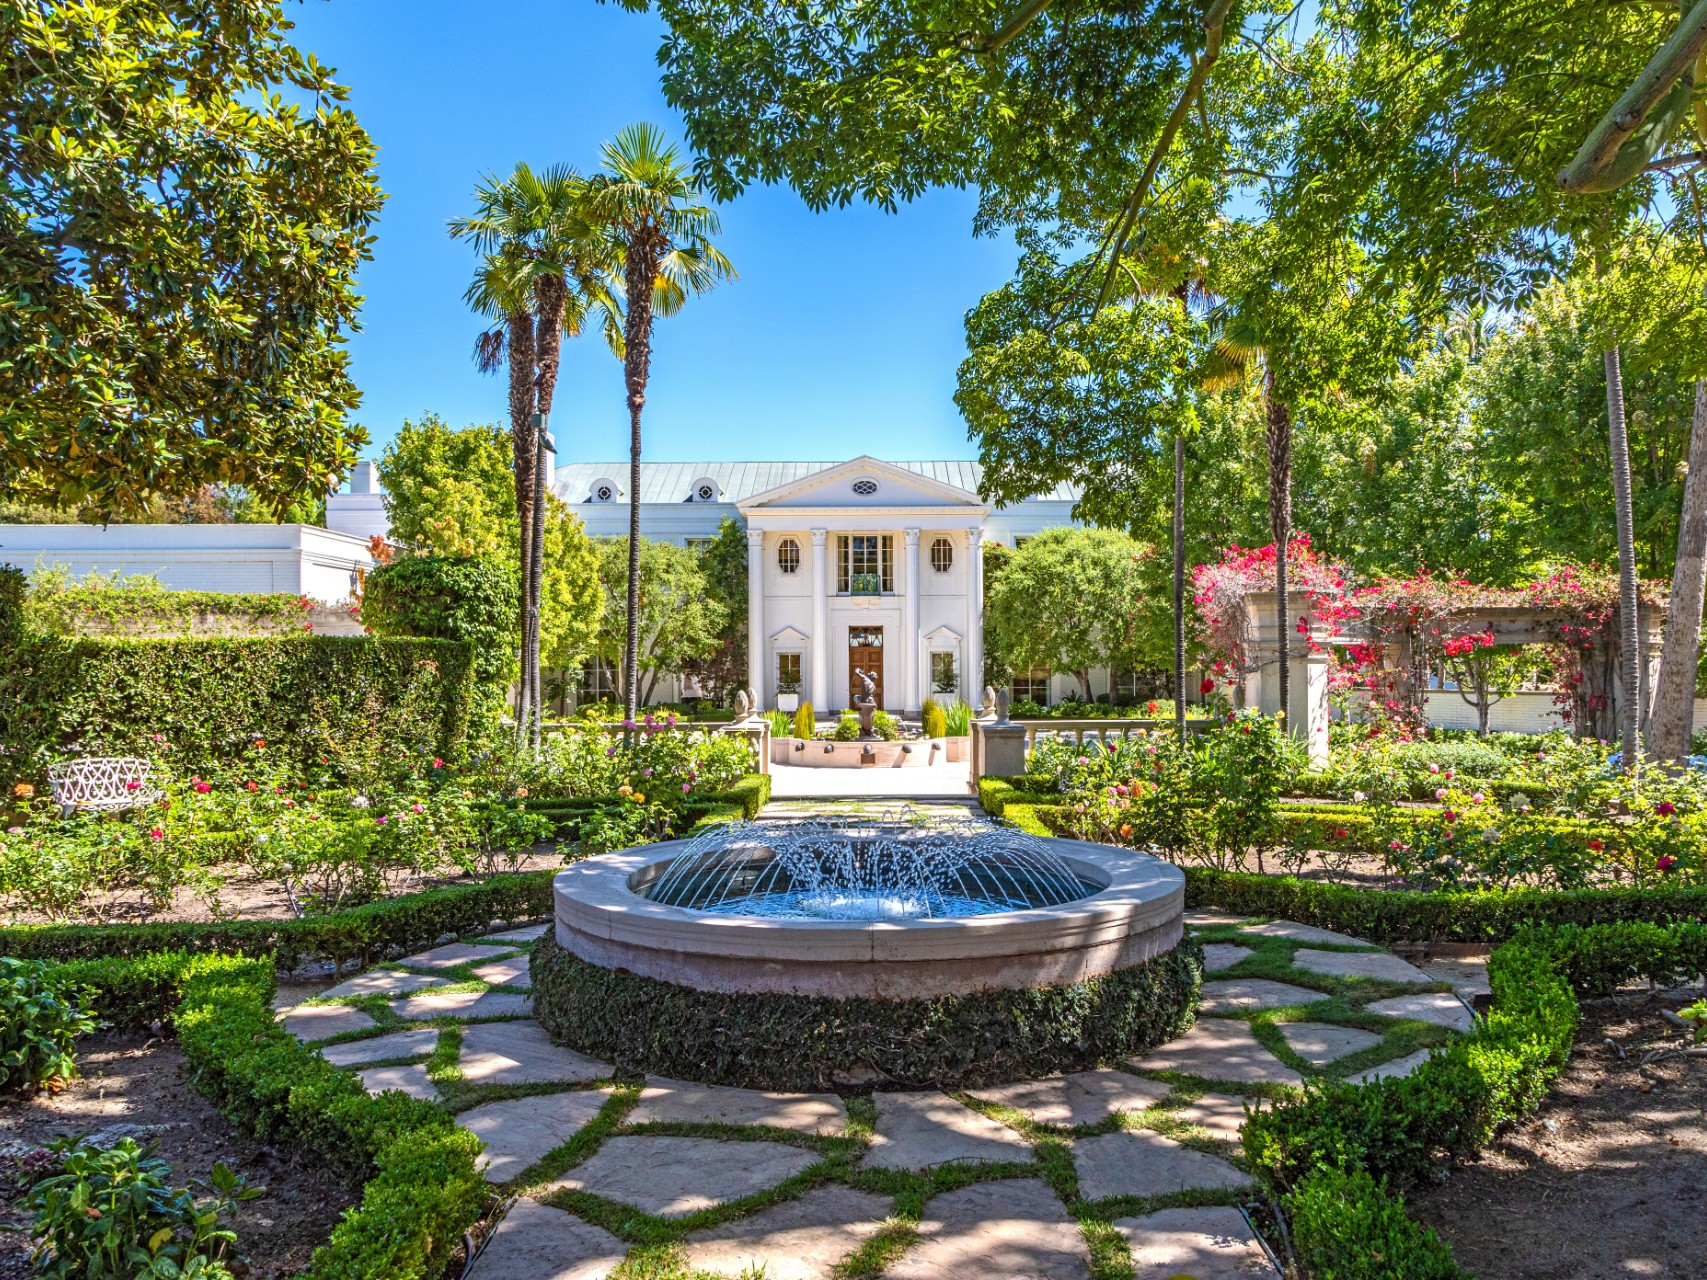 希望価格で売れたとすれば、この邸宅は、カリフォルニア州で販売された史上最高額の住宅になる。